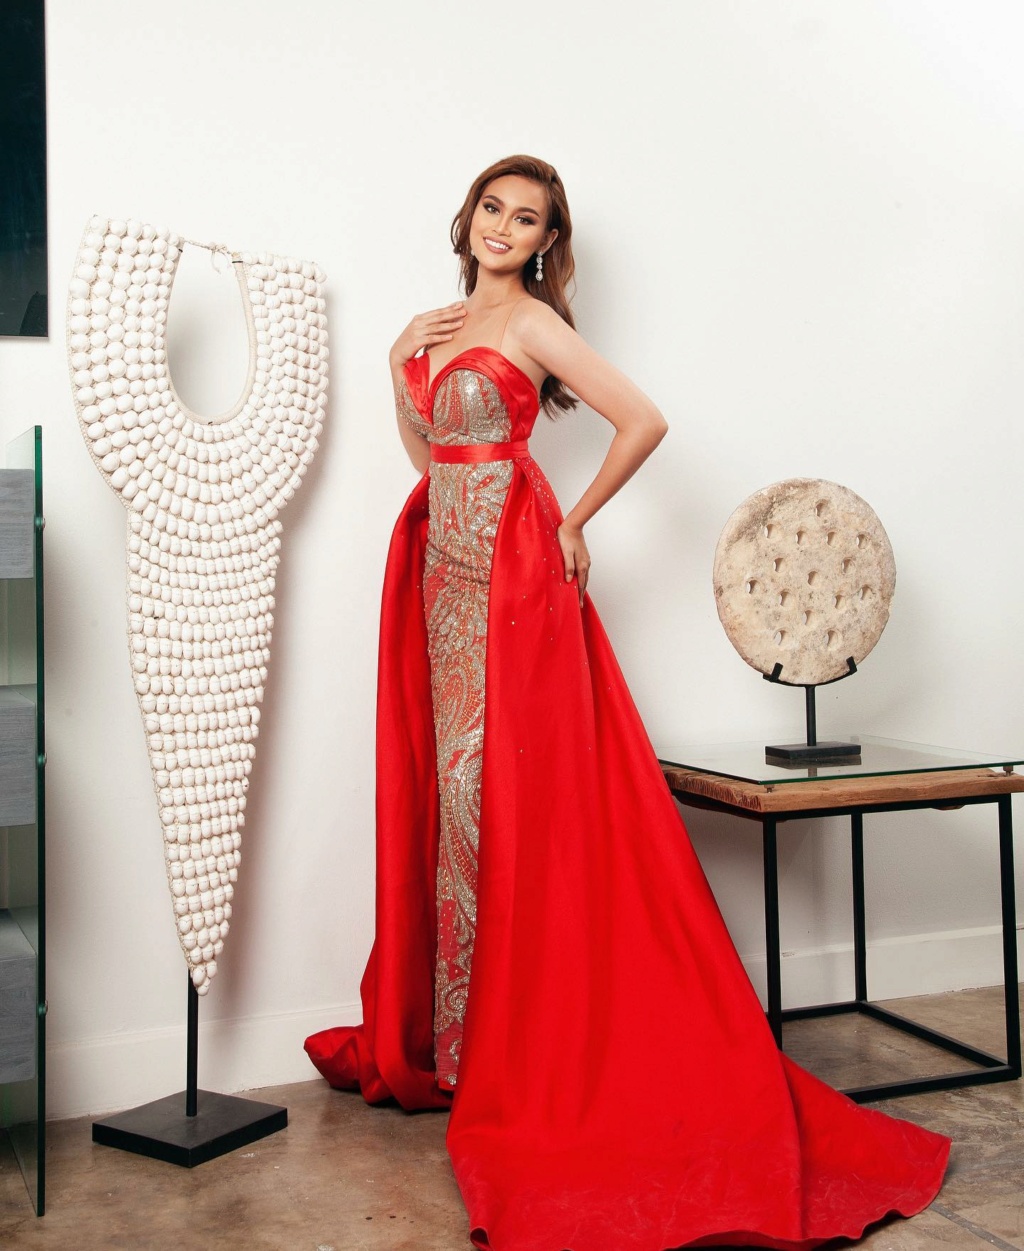 Miss World Philippines 2021 @ Evening Gown Portrait 21800410